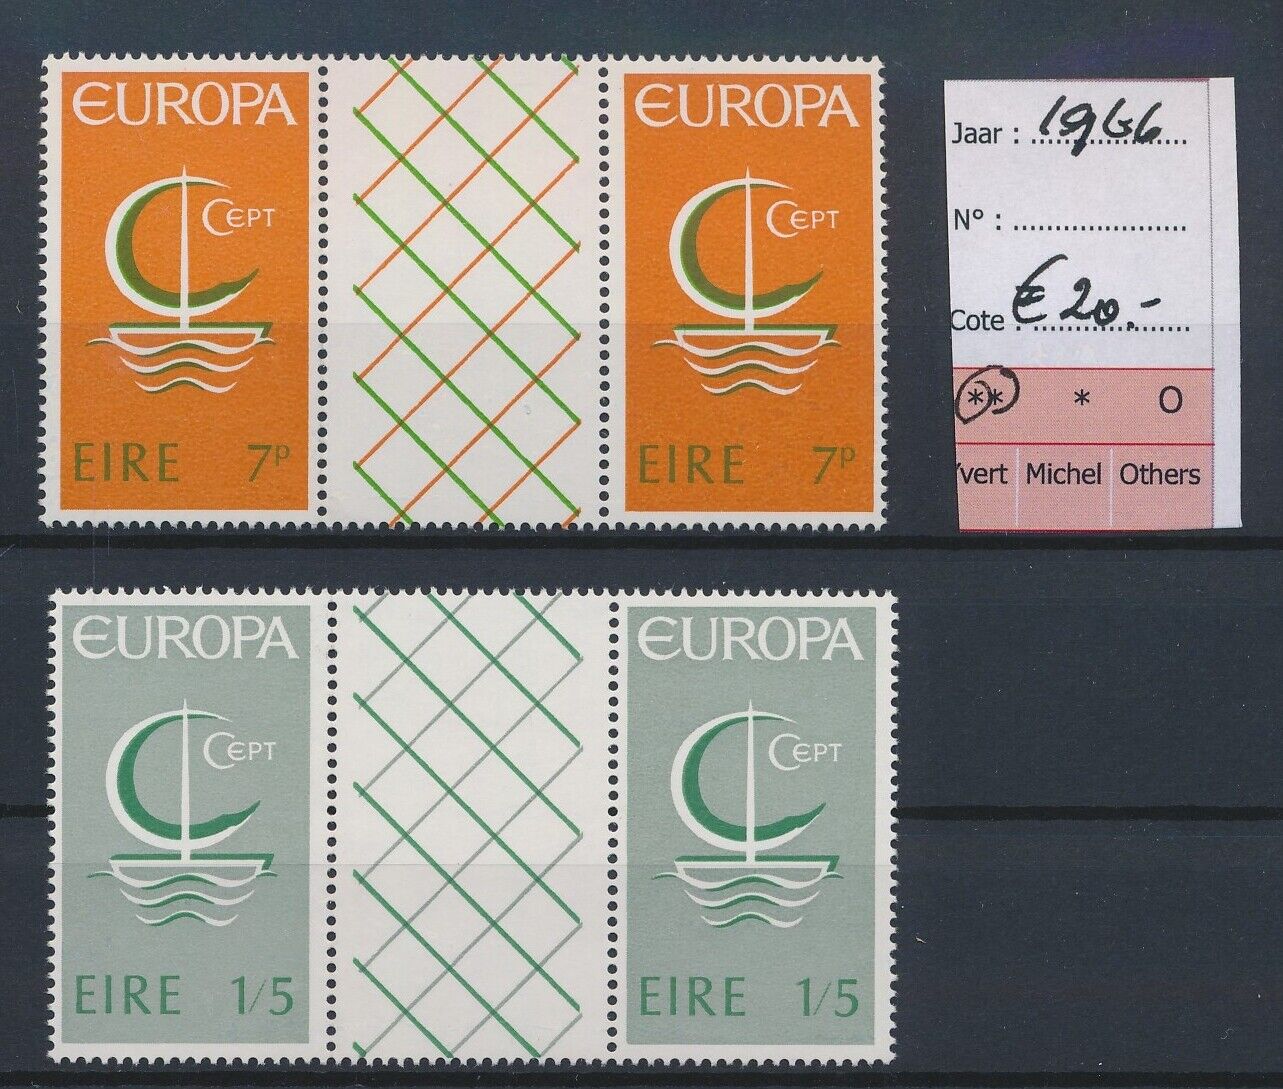 Lq16186 Ireland 1966 Europa Cept Gutter Pairs Mnh Cv 20 Eur